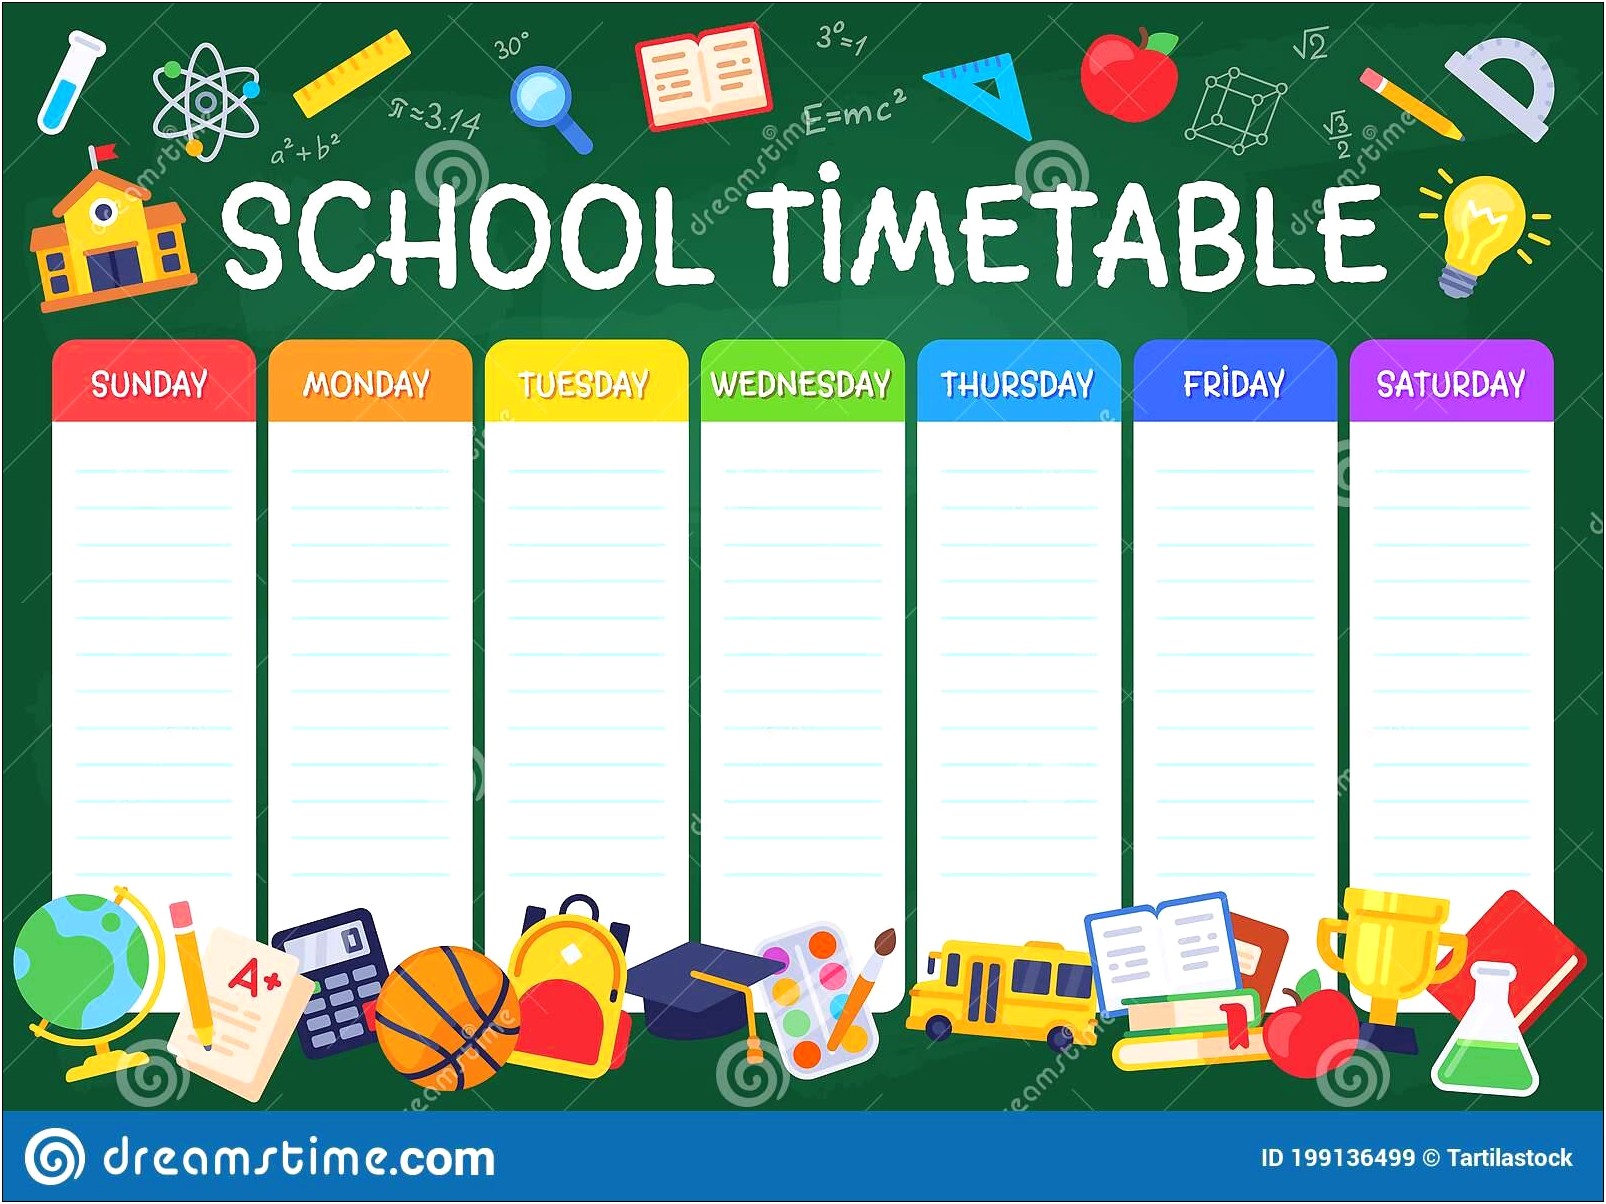 Free Weekly Calendar Template School Schedule Printable